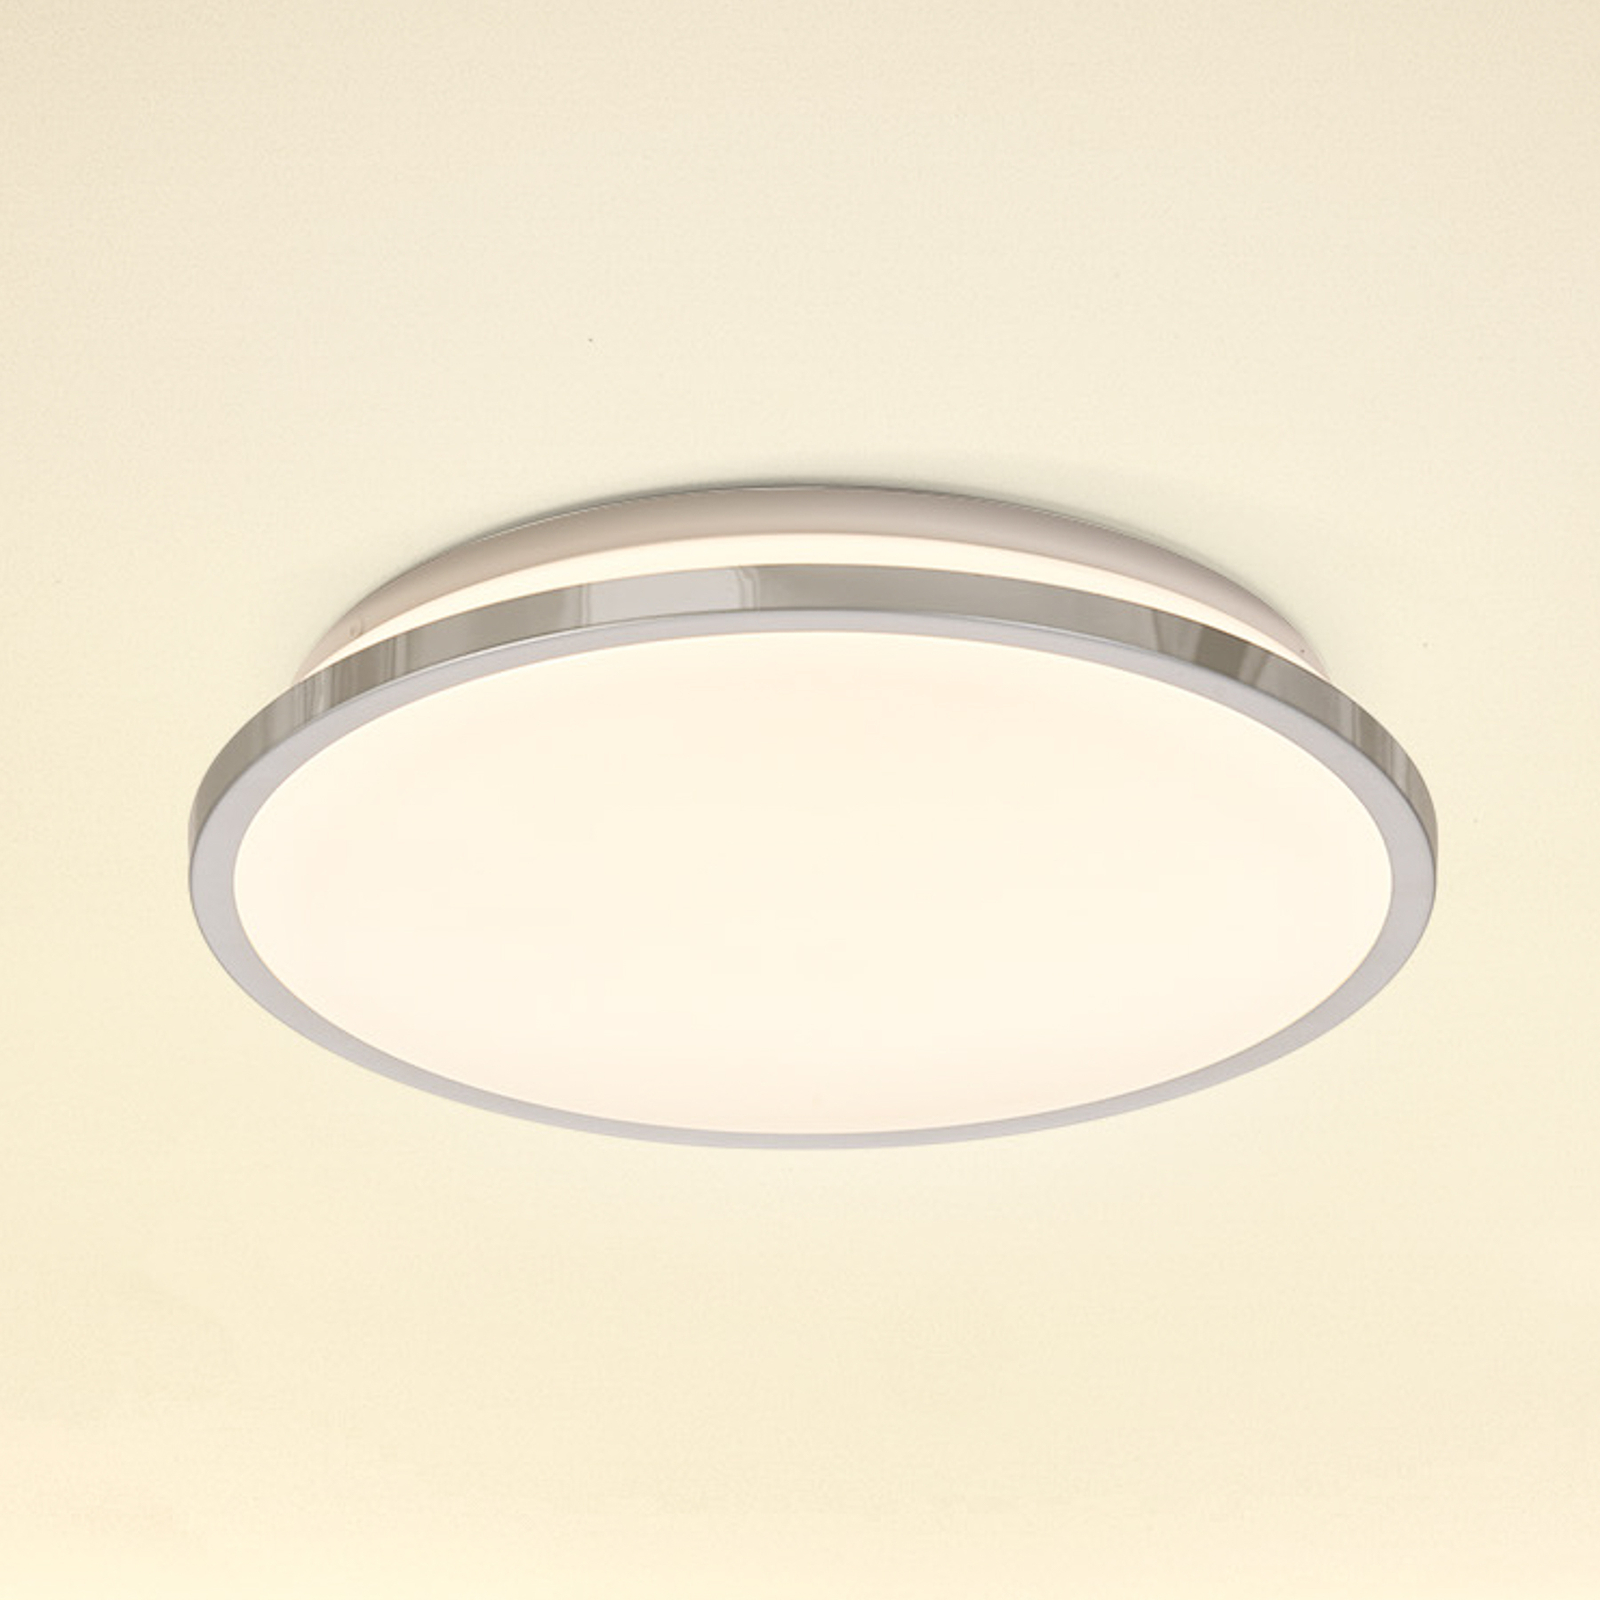 LEDVANCE Bathroom Ceiling LED-Deckenlampe chrom